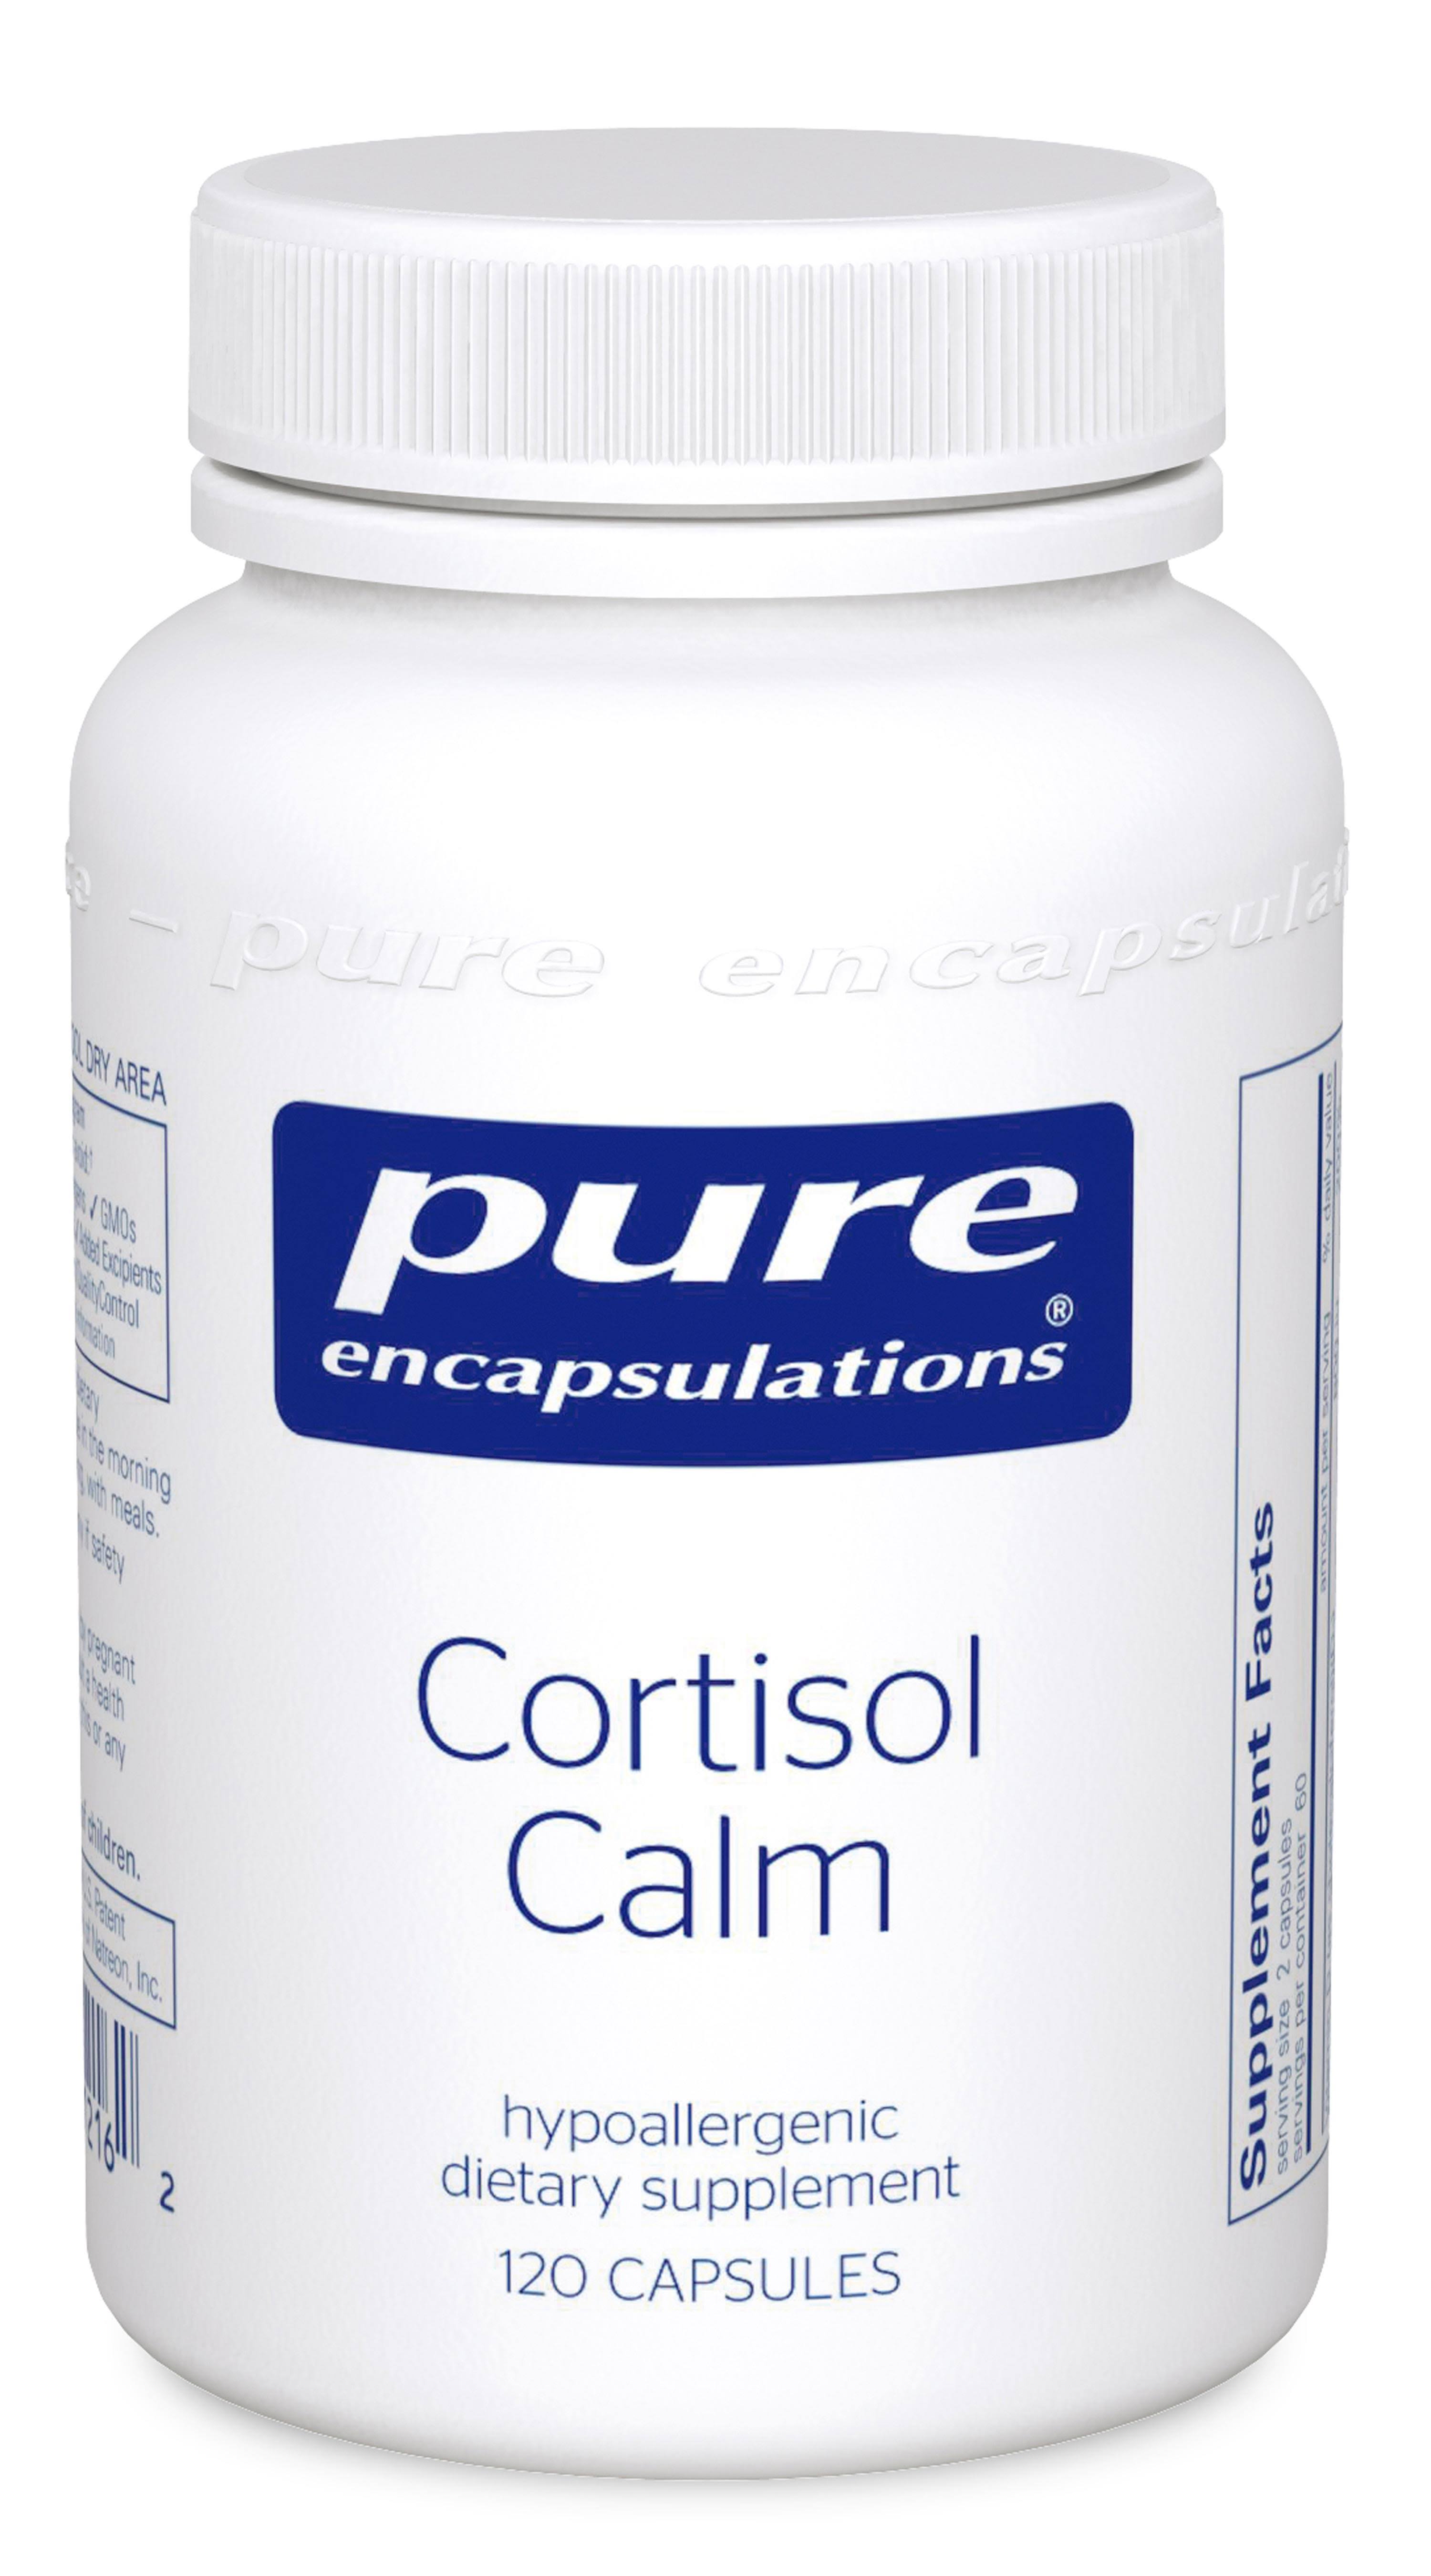 Pure Encapsulations Cortisol Calm Dietary Supplement - 120 Capsules